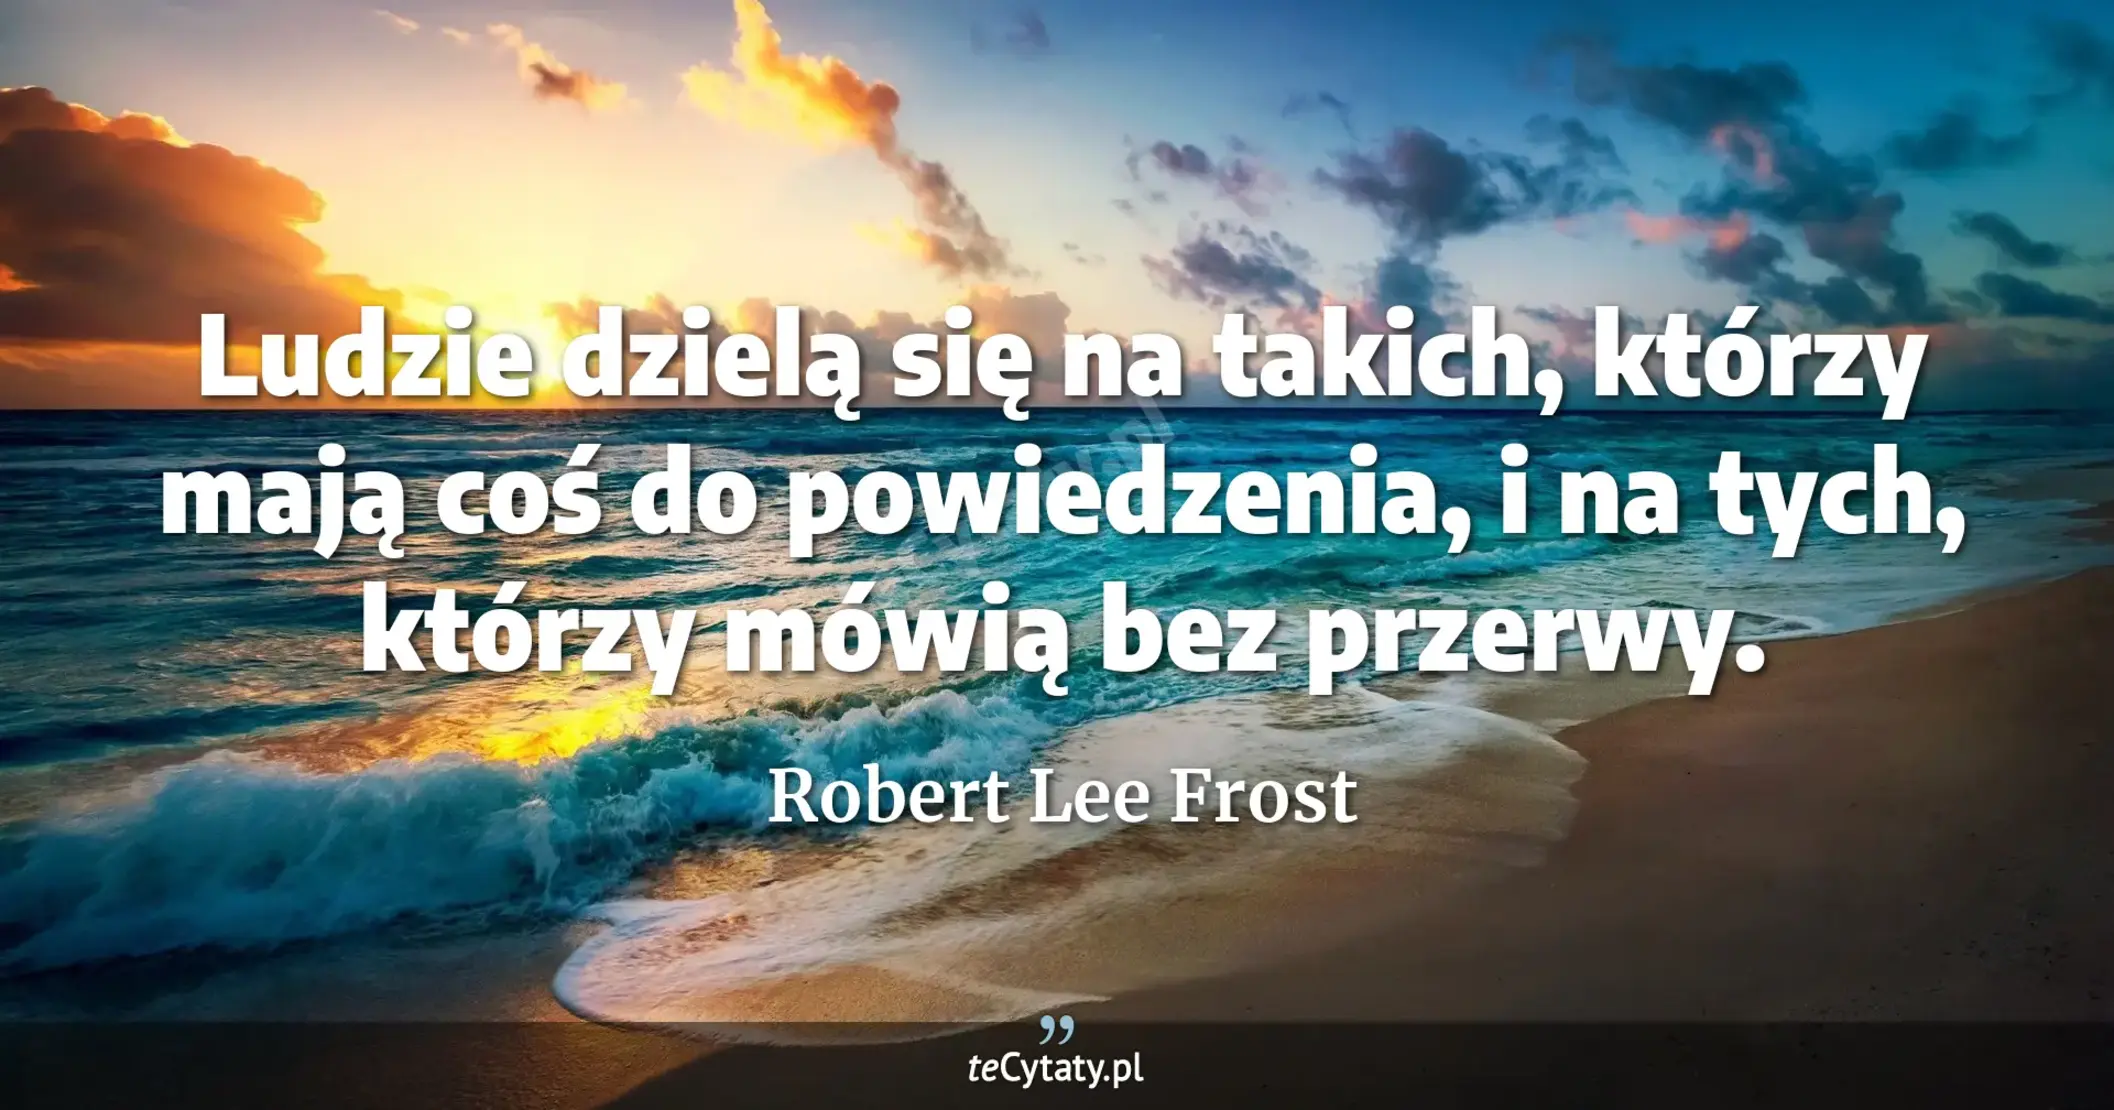 Ludzie dzielą się na takich, którzy mają coś do powiedzenia, i na tych, którzy mówią bez przerwy. - Robert Lee Frost